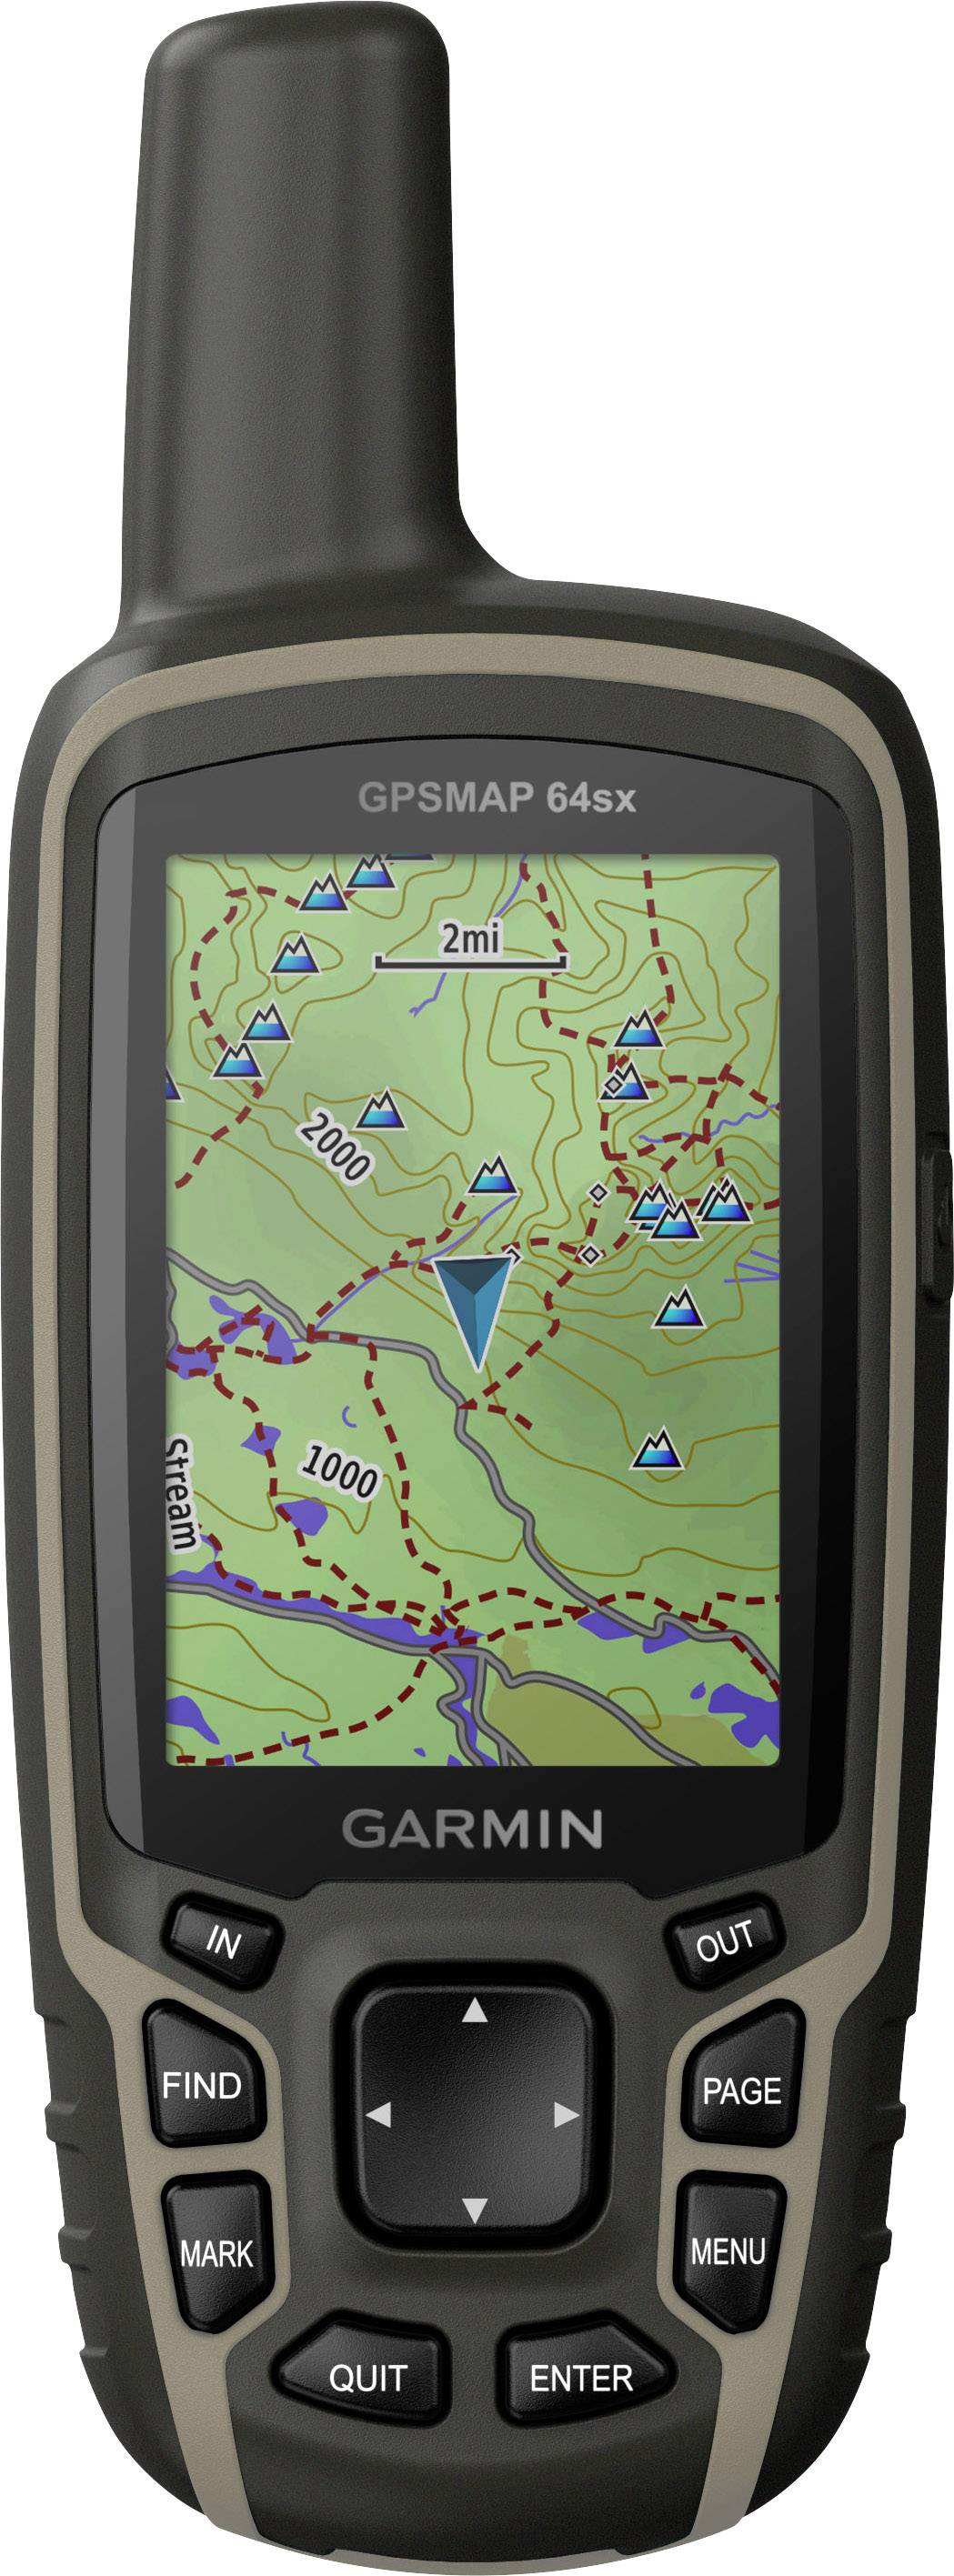 جی پی اس دستی مخصوص نقشه برداری و عمران گارمین مدل 64sx